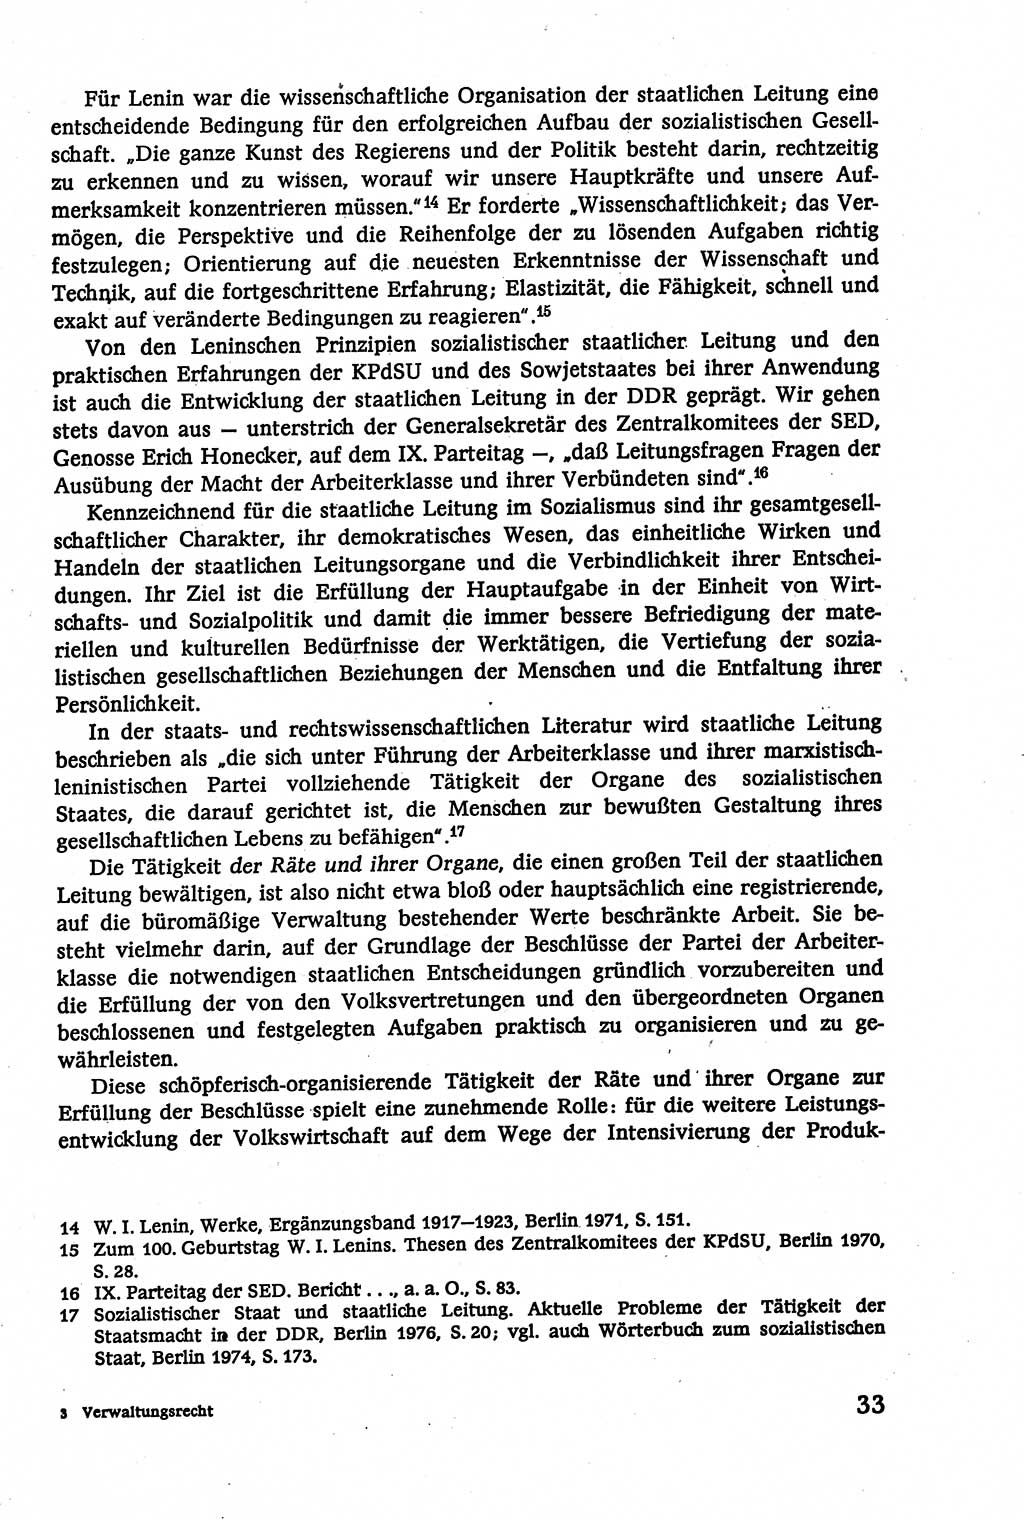 Verwaltungsrecht [Deutsche Demokratische Republik (DDR)], Lehrbuch 1979, Seite 33 (Verw.-R. DDR Lb. 1979, S. 33)